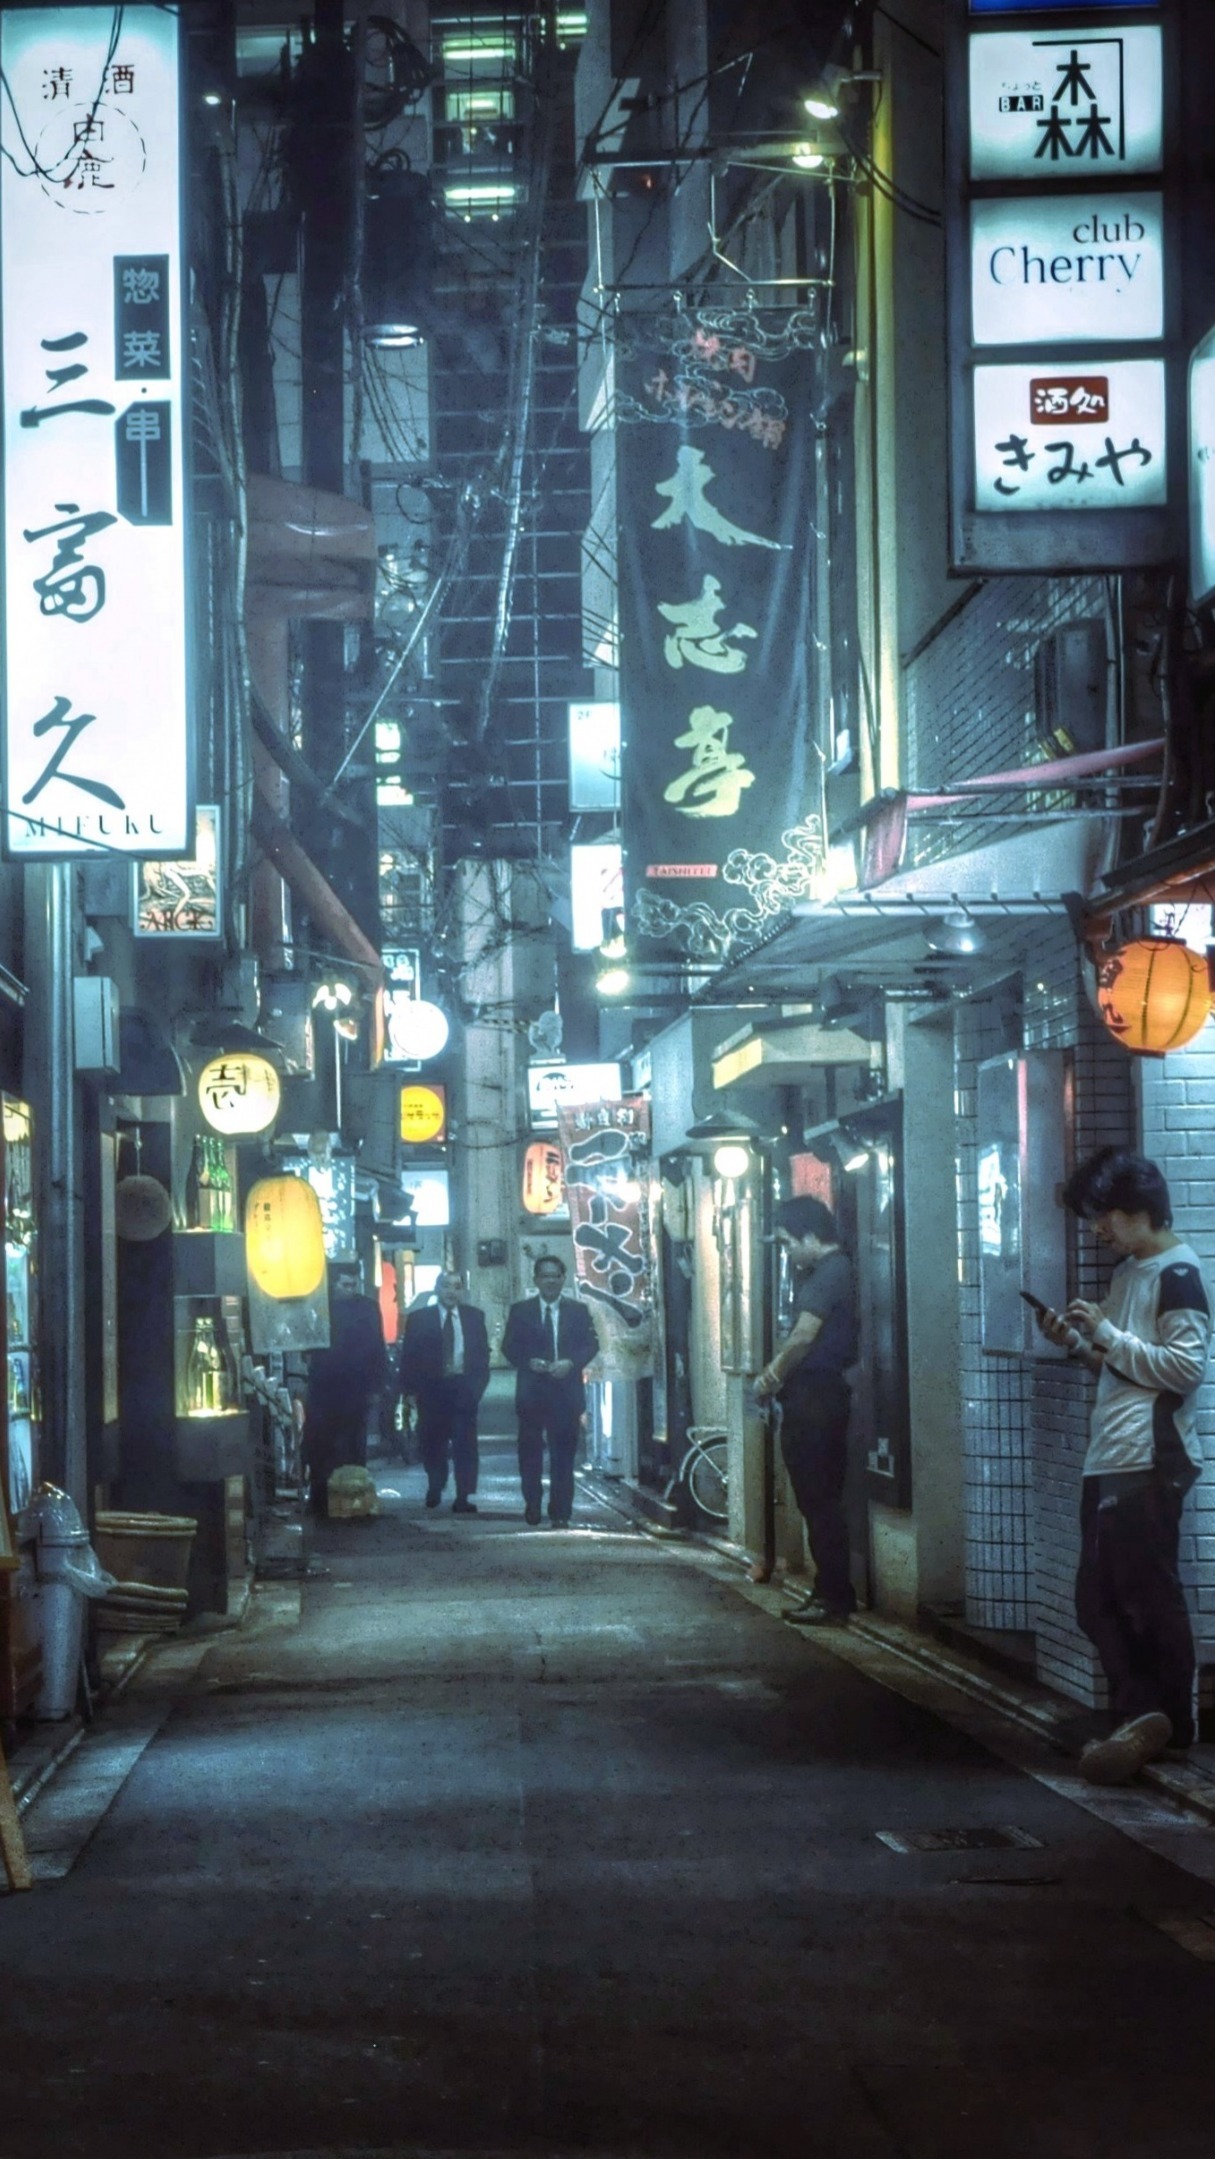 Alleyway in Tokyo - backiee